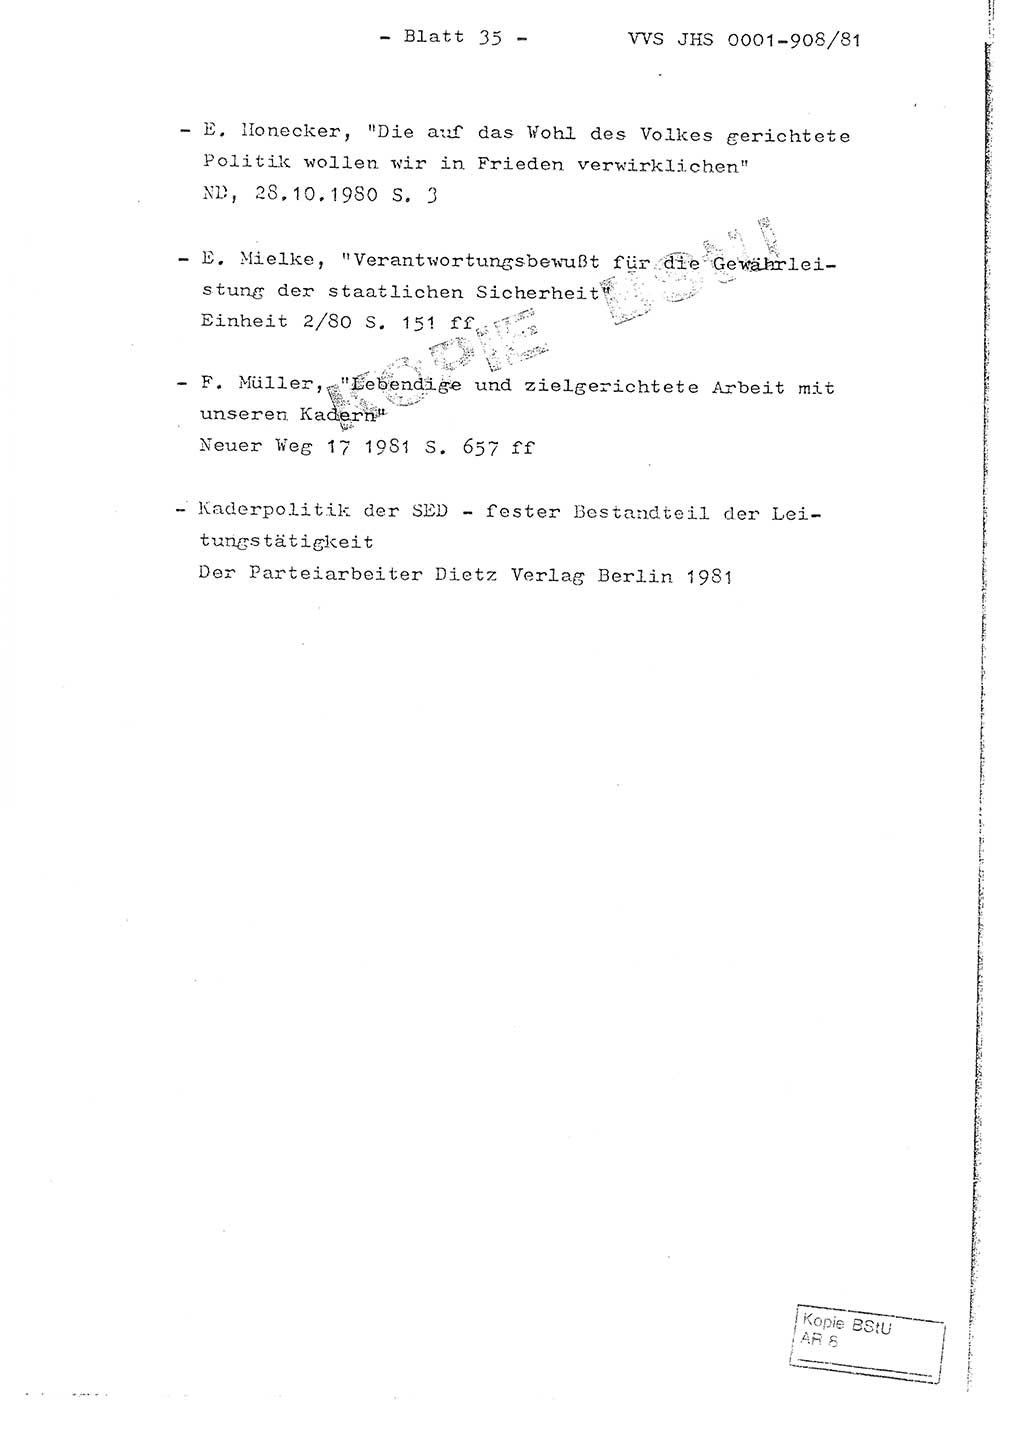 Fachschulabschlußarbeit Oberleutnant Wolfgang Wittmann (Abt. ⅩⅣ), Ministerium für Staatssicherheit (MfS) [Deutsche Demokratische Republik (DDR)], Juristische Hochschule (JHS), Vertrauliche Verschlußsache (VVS) o001-908/82, Potsdam 1982, Blatt 35 (FS-Abschl.-Arb. MfS DDR JHS VVS o001-908/82 1982, Bl. 35)